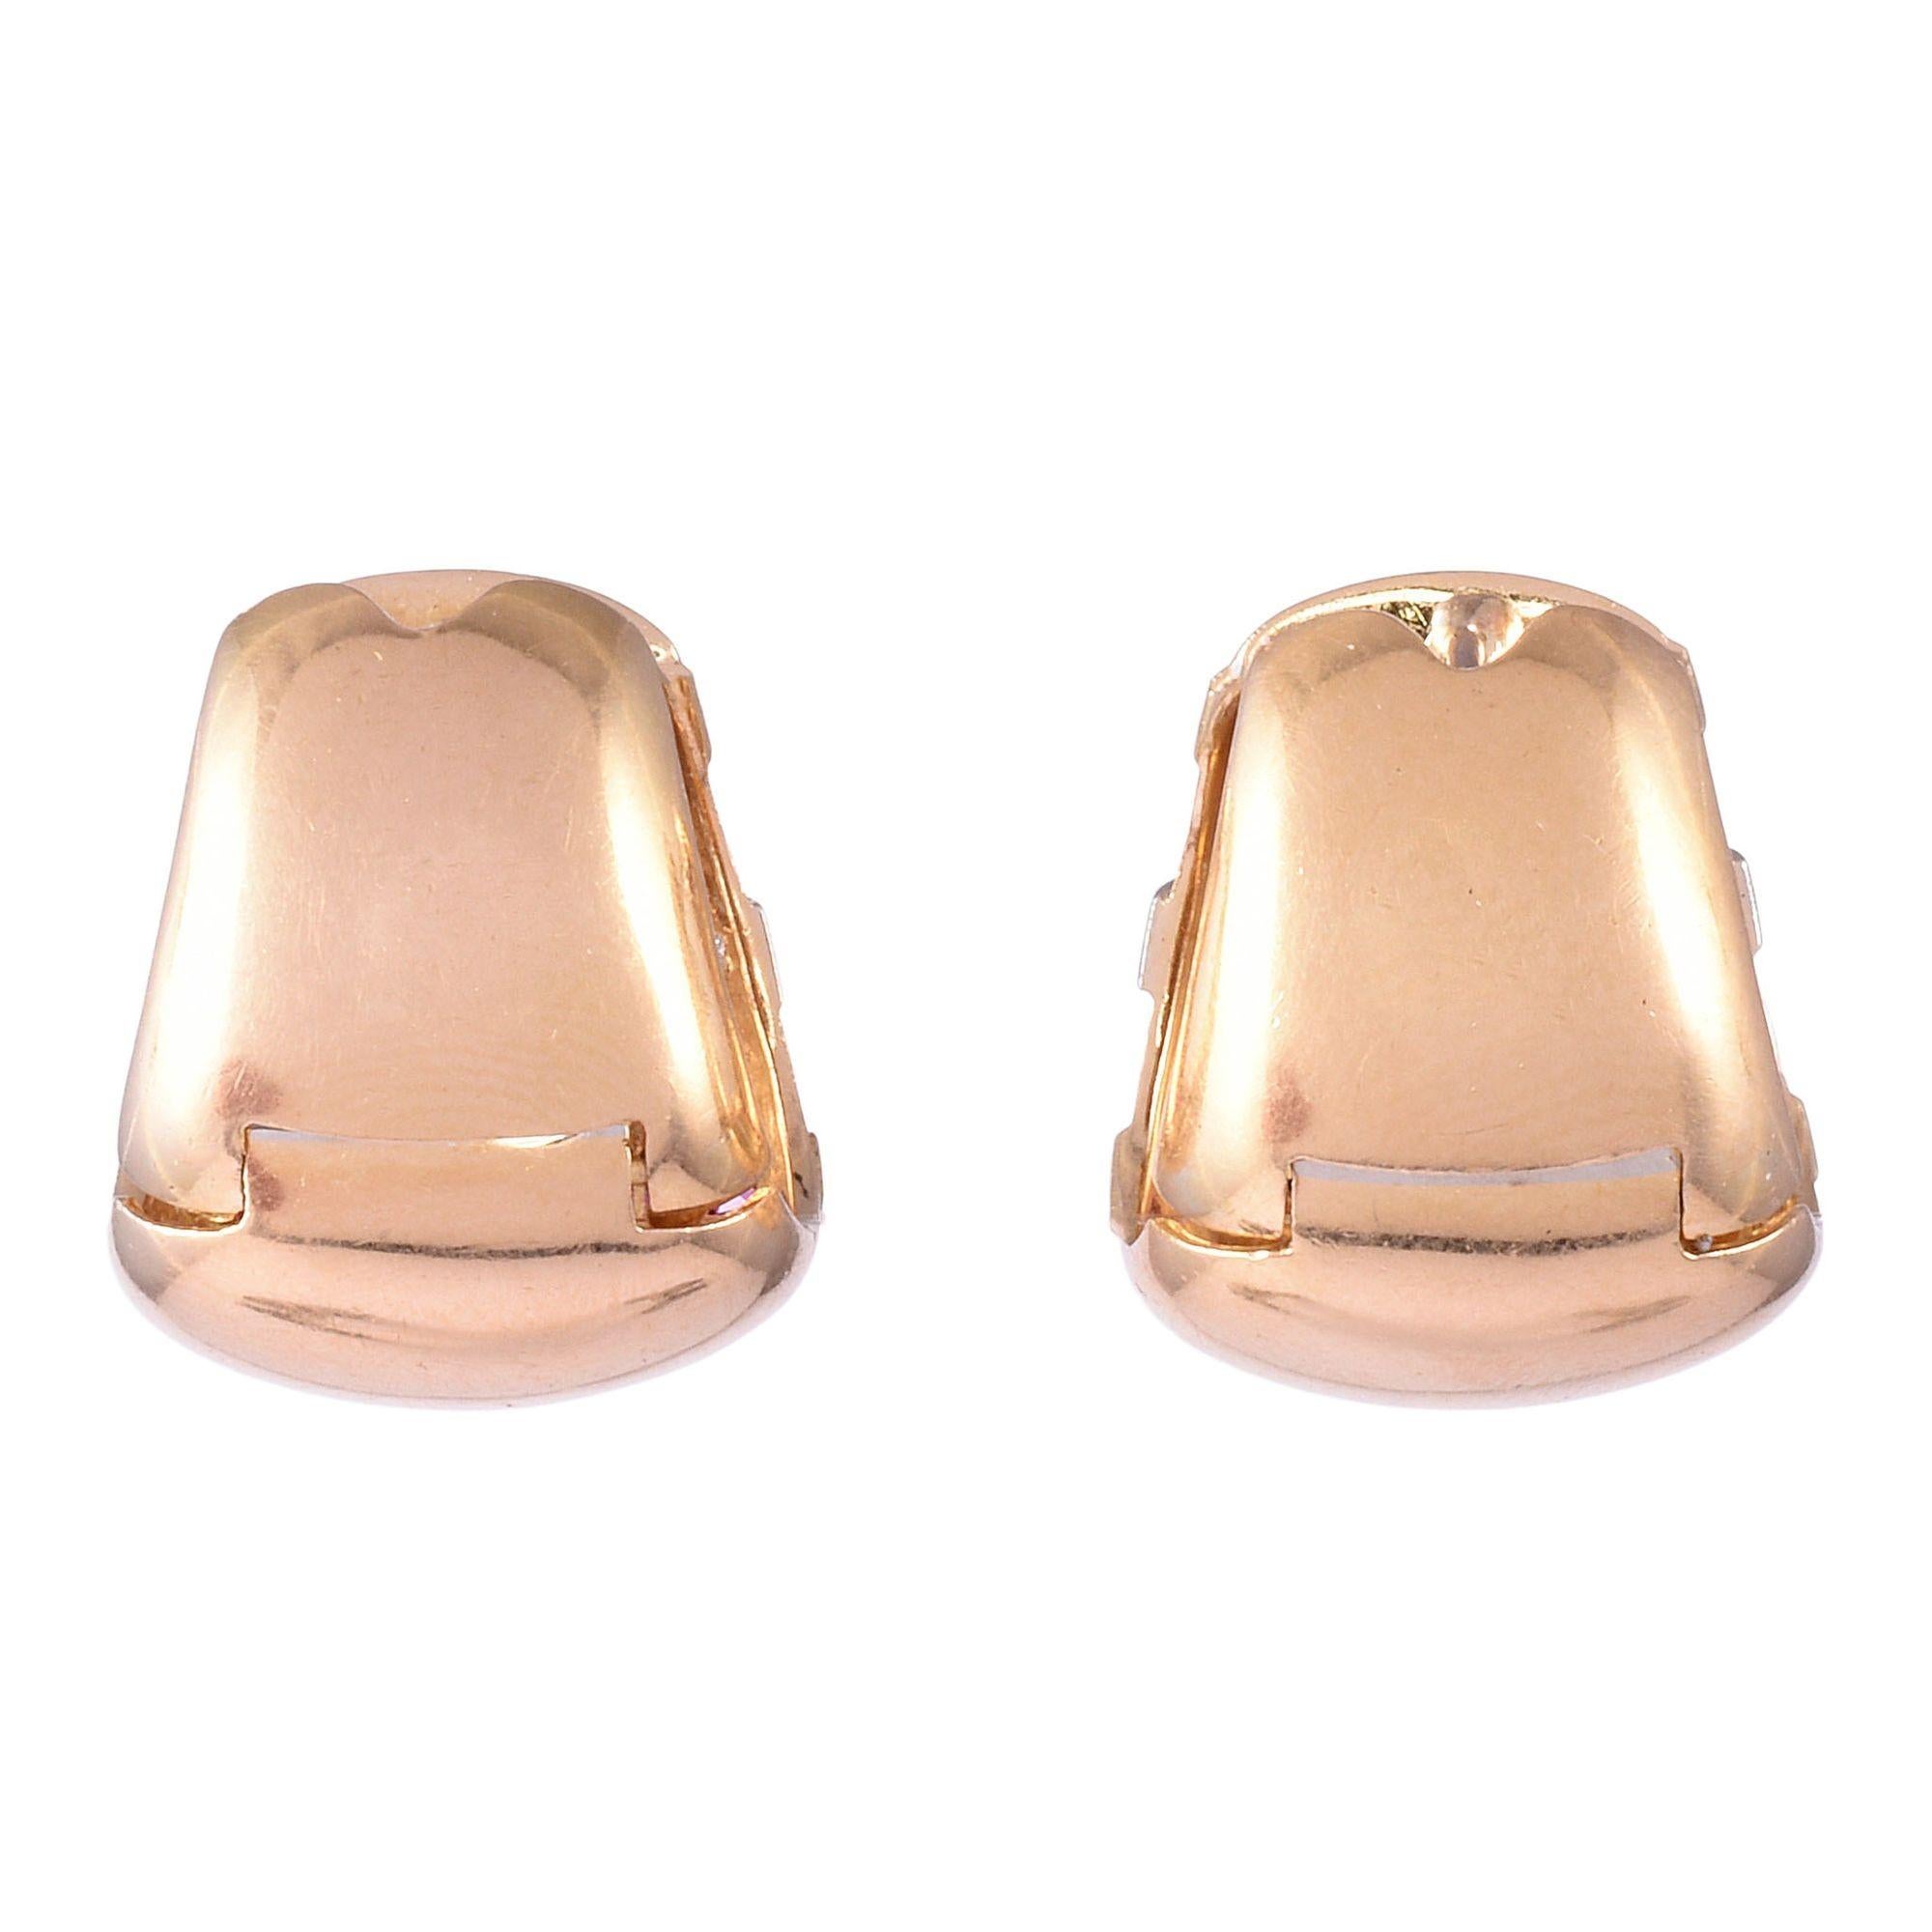 Vintage Retro Rubin & Diamant 18K Ohrringe, circa 1940. Diese Retro-Ohrringe sind aus 18 Karat Gelbgold gefertigt und mit Rubinen von 1,25 Karat Gesamtgewicht und Diamanten von 0,50 Karat Gesamtgewicht besetzt. Die Diamanten haben die Reinheit VS